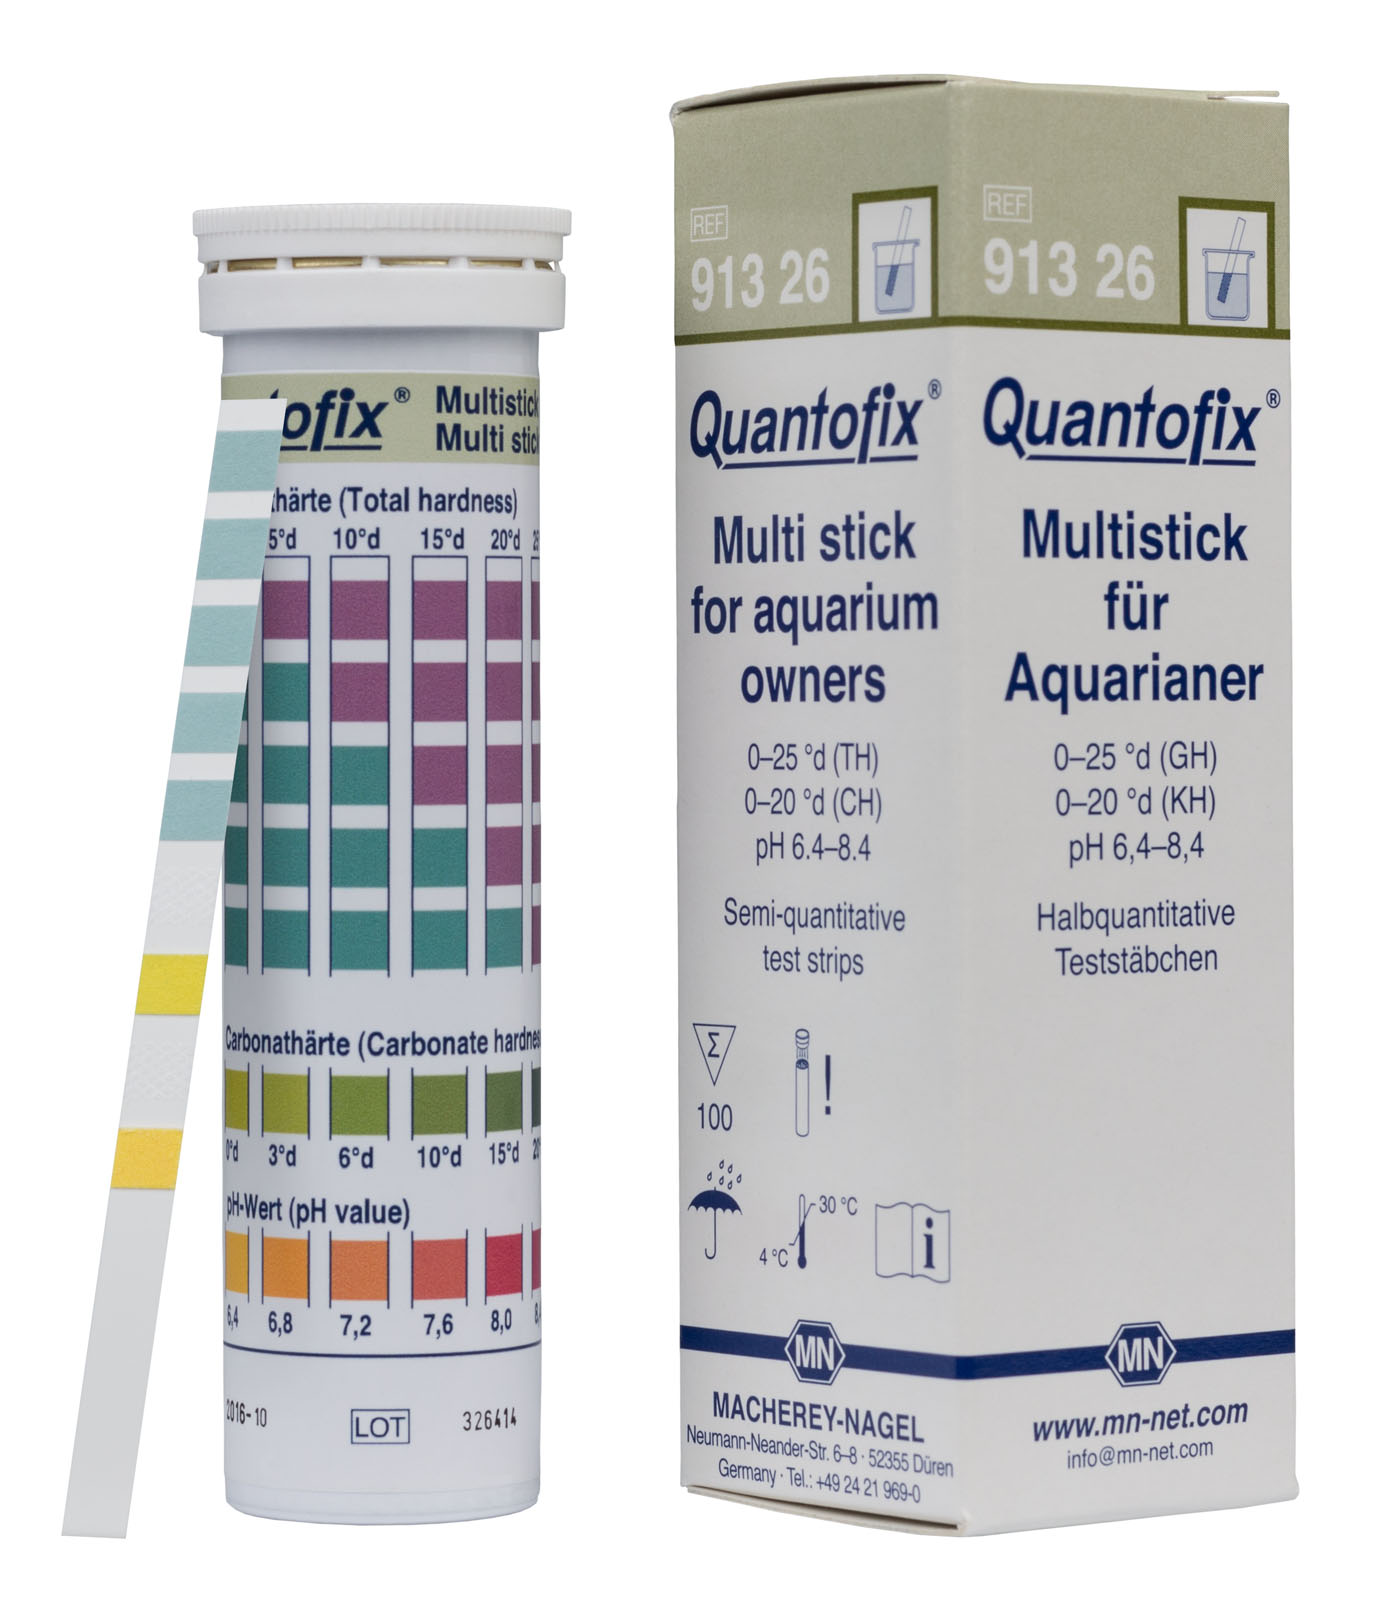 QUANTOFIX® Multistick for aquarium owners